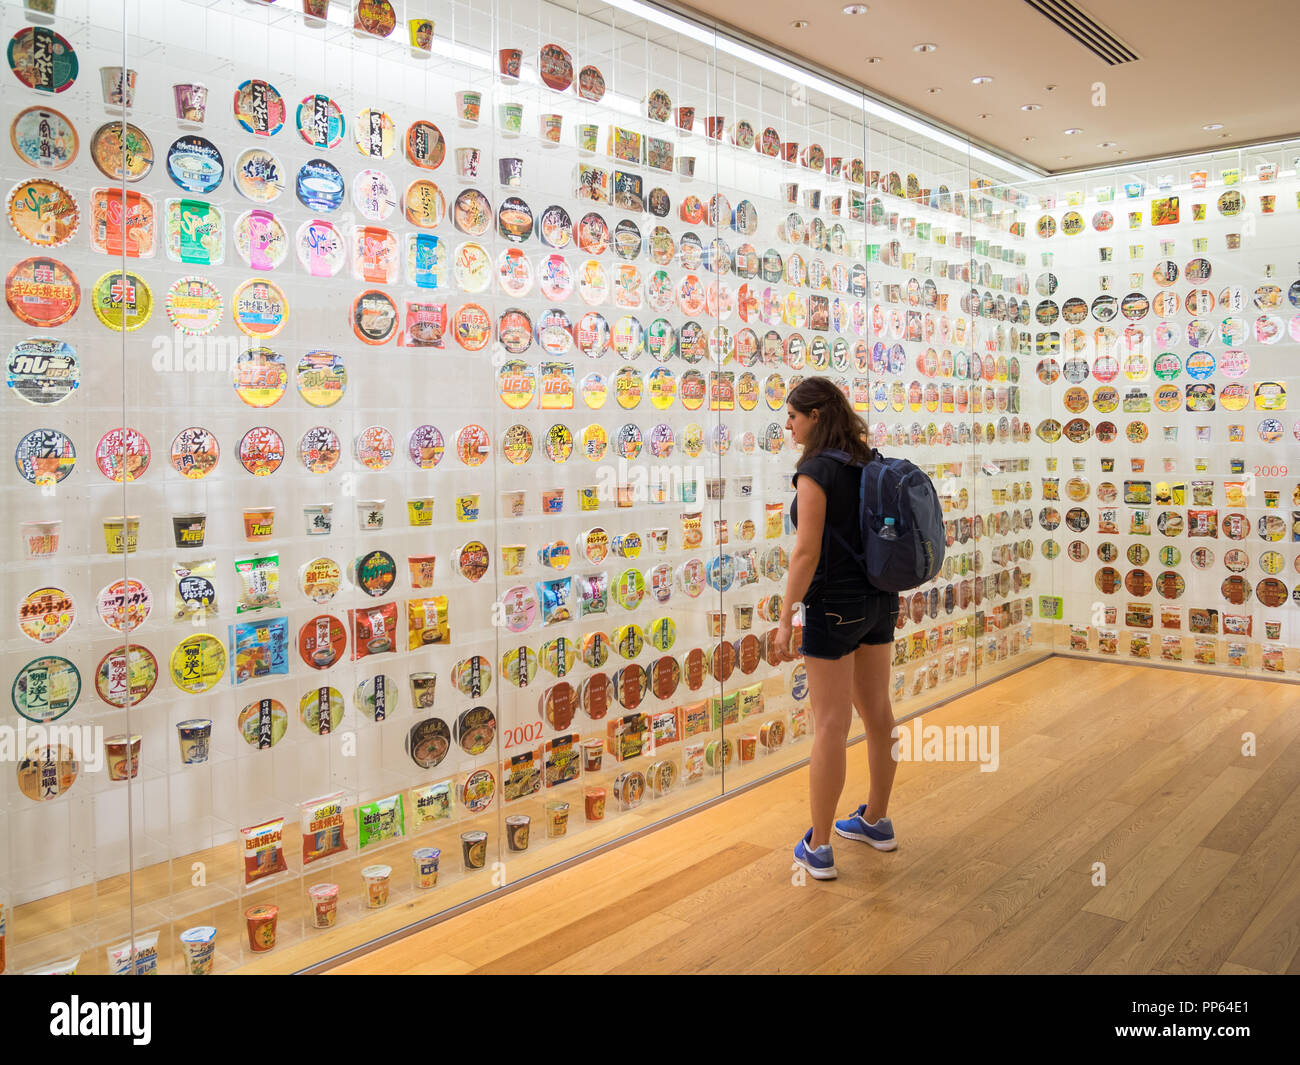 L'histoire des nouilles instantanées à l'exposition Cube Cupnoodles Museum (Musée Momofuku Ando Instant Noodles) à Yokohama, au Japon. Banque D'Images